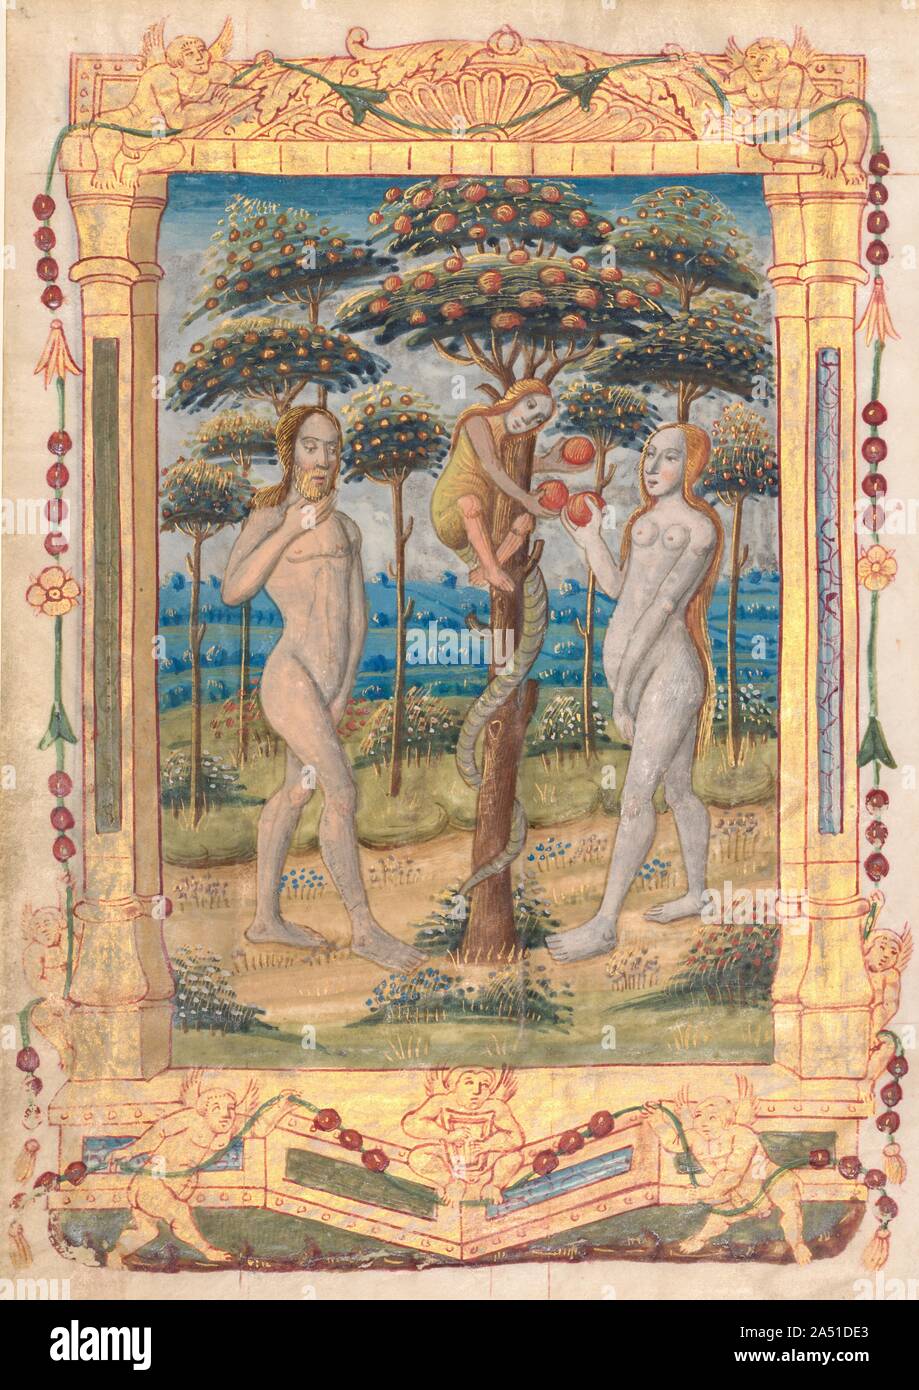 Feuille d'un livre d'heures : Adam et Eve et la chute de l'homme (Prefatory miniature pour le Bureau de la Vierge) (recto) et du texte avec l'Illustre Border (verso) (1 de 3 feuilles excisées), ch. 1510. Caractéristique de la main de l'artiste, la couleur orange-rouge se combinent avec des bleus, verts, et une abondance de lavage de l'or dans cette feuille. Il a utilisé des lignes parallèles ou crosshatching en or pour indiquer l'ombrage, met en lumière, et la texture de draperies, suggérant une certaine connaissance de l'estampe, un art pour lequel Rouen est également un centre important. Ses chiffres ont de grandes, abondamment décrit visages ovales. Ce m Banque D'Images